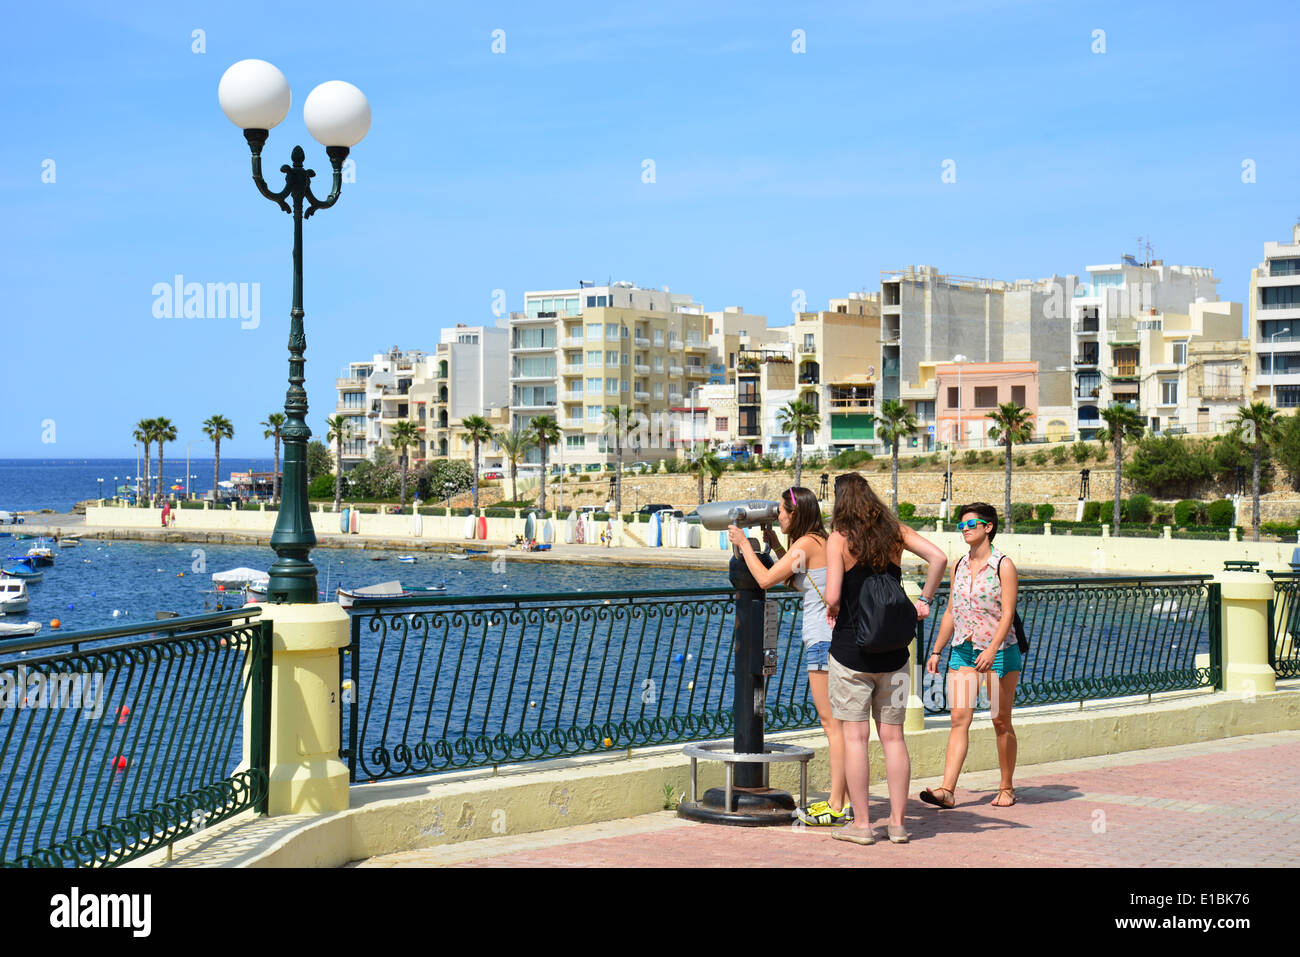 Promenade du front de mer, Saint Paul's Bay (San Pawl il-baħar), District Nord, République de Malte Banque D'Images